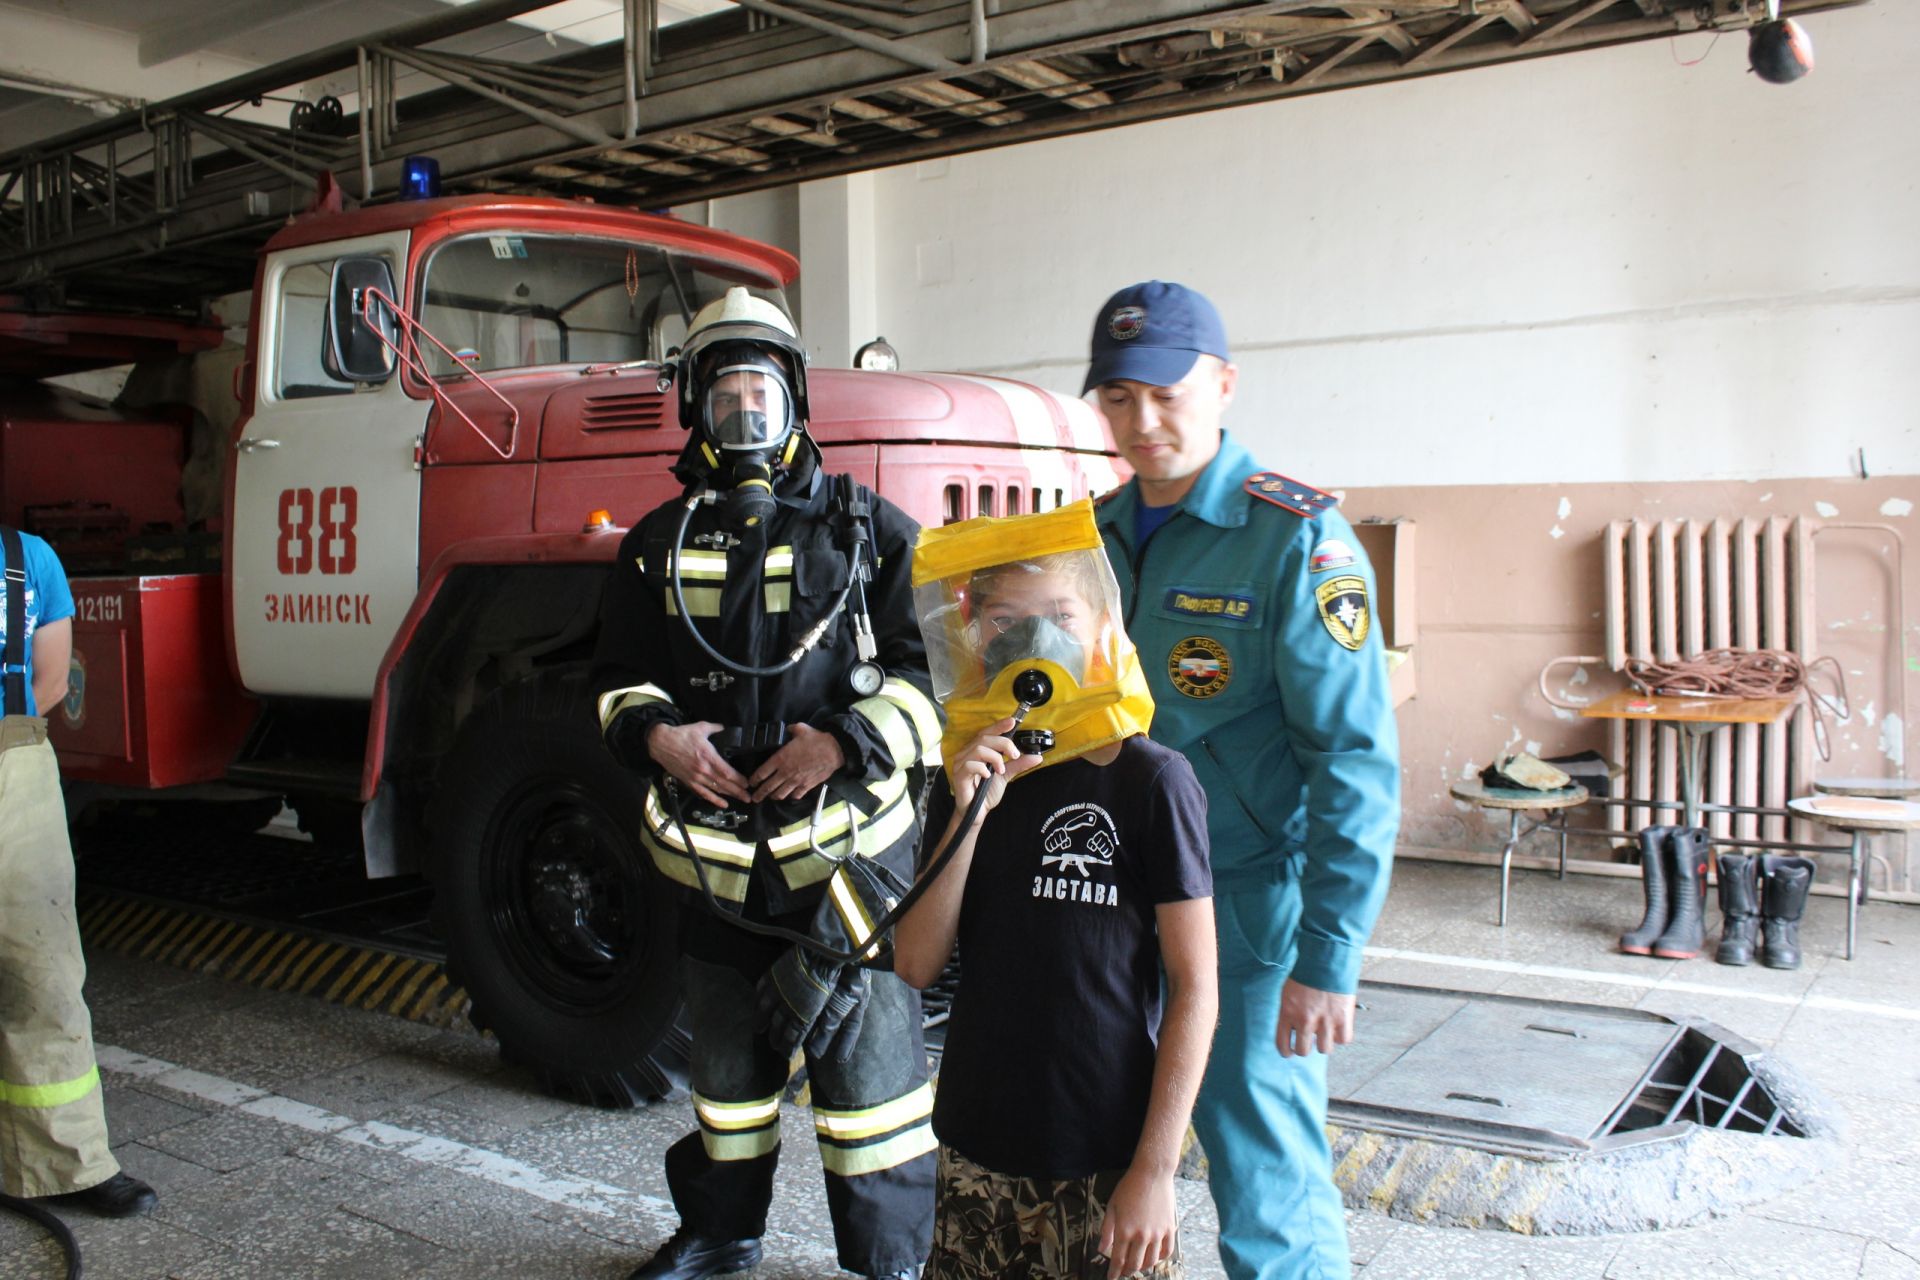 Юные заинцы побывали на экскурсии в пожарной части 